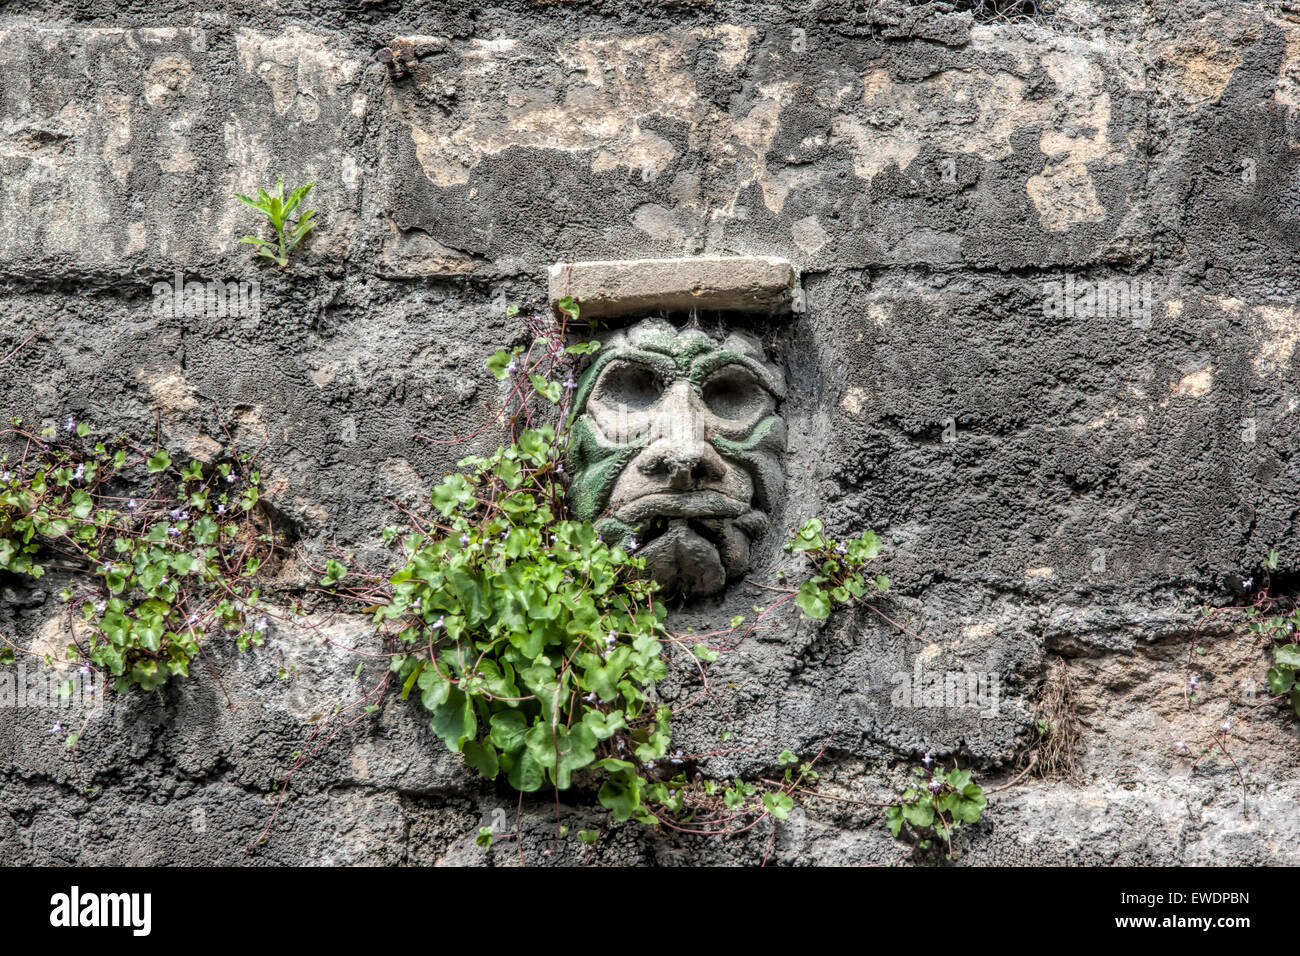 Statue de pierre sculptée dans le mur en pierre de Bath à Walcot Street dans la baignoire avec le feuillage vert. L'un d'une collection de grotesques. Banque D'Images